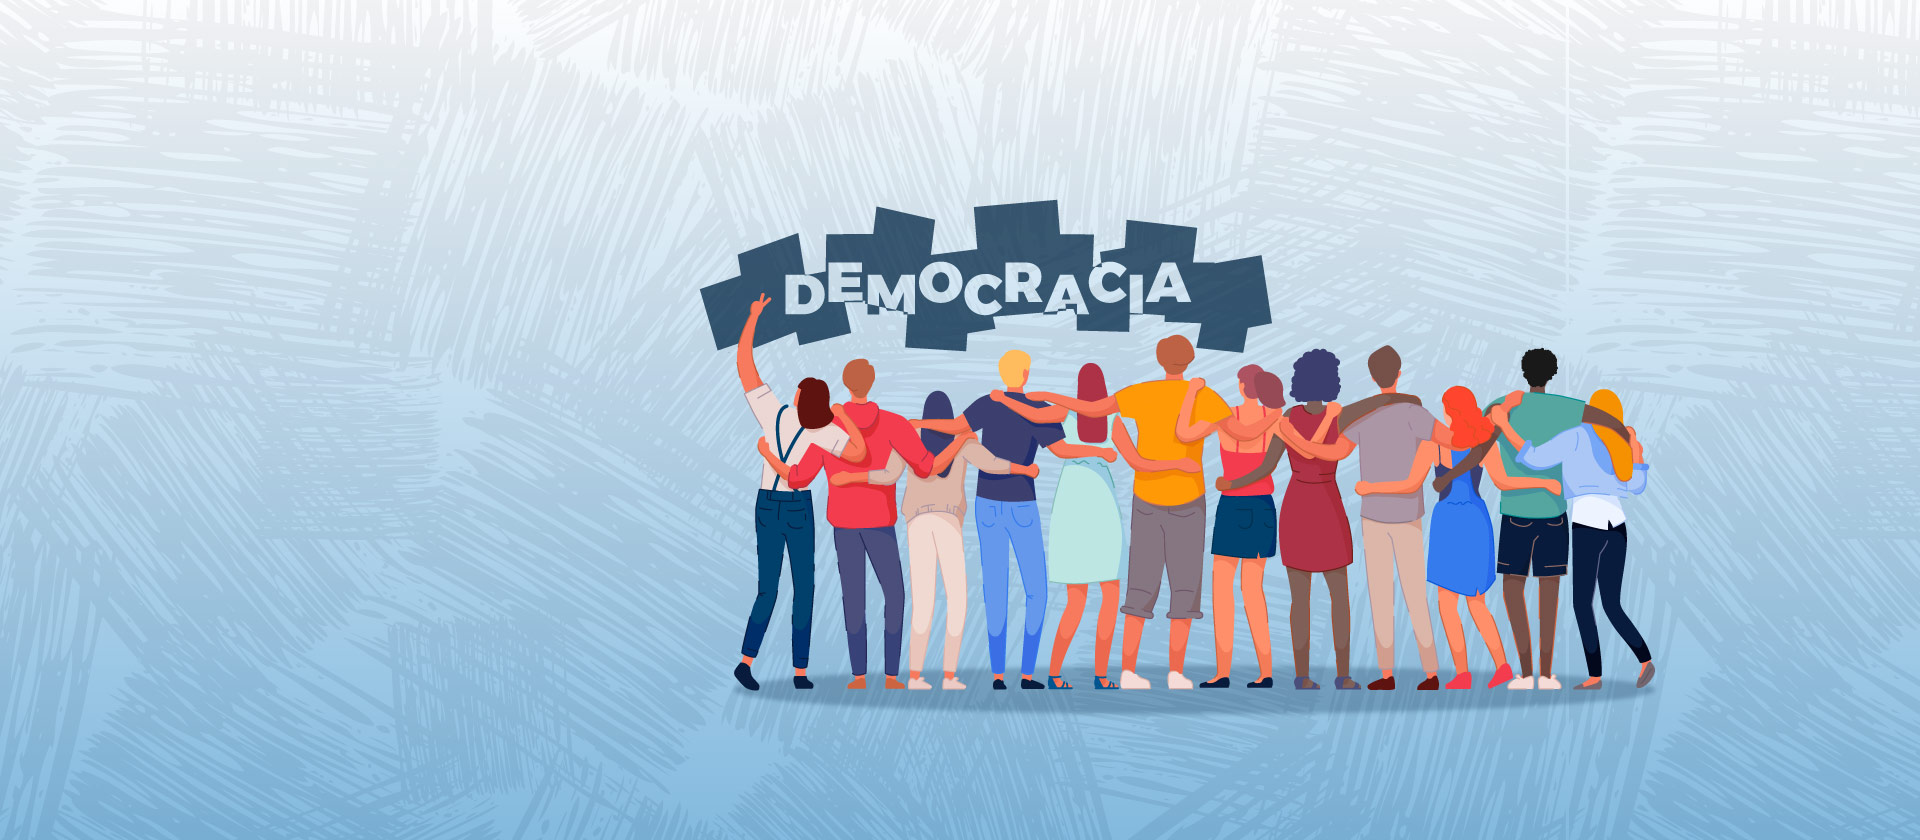 Imagem ilustrativa que mostra varias pessoas de costas olhando para a palavra DEMOCRACIA sob grafismo